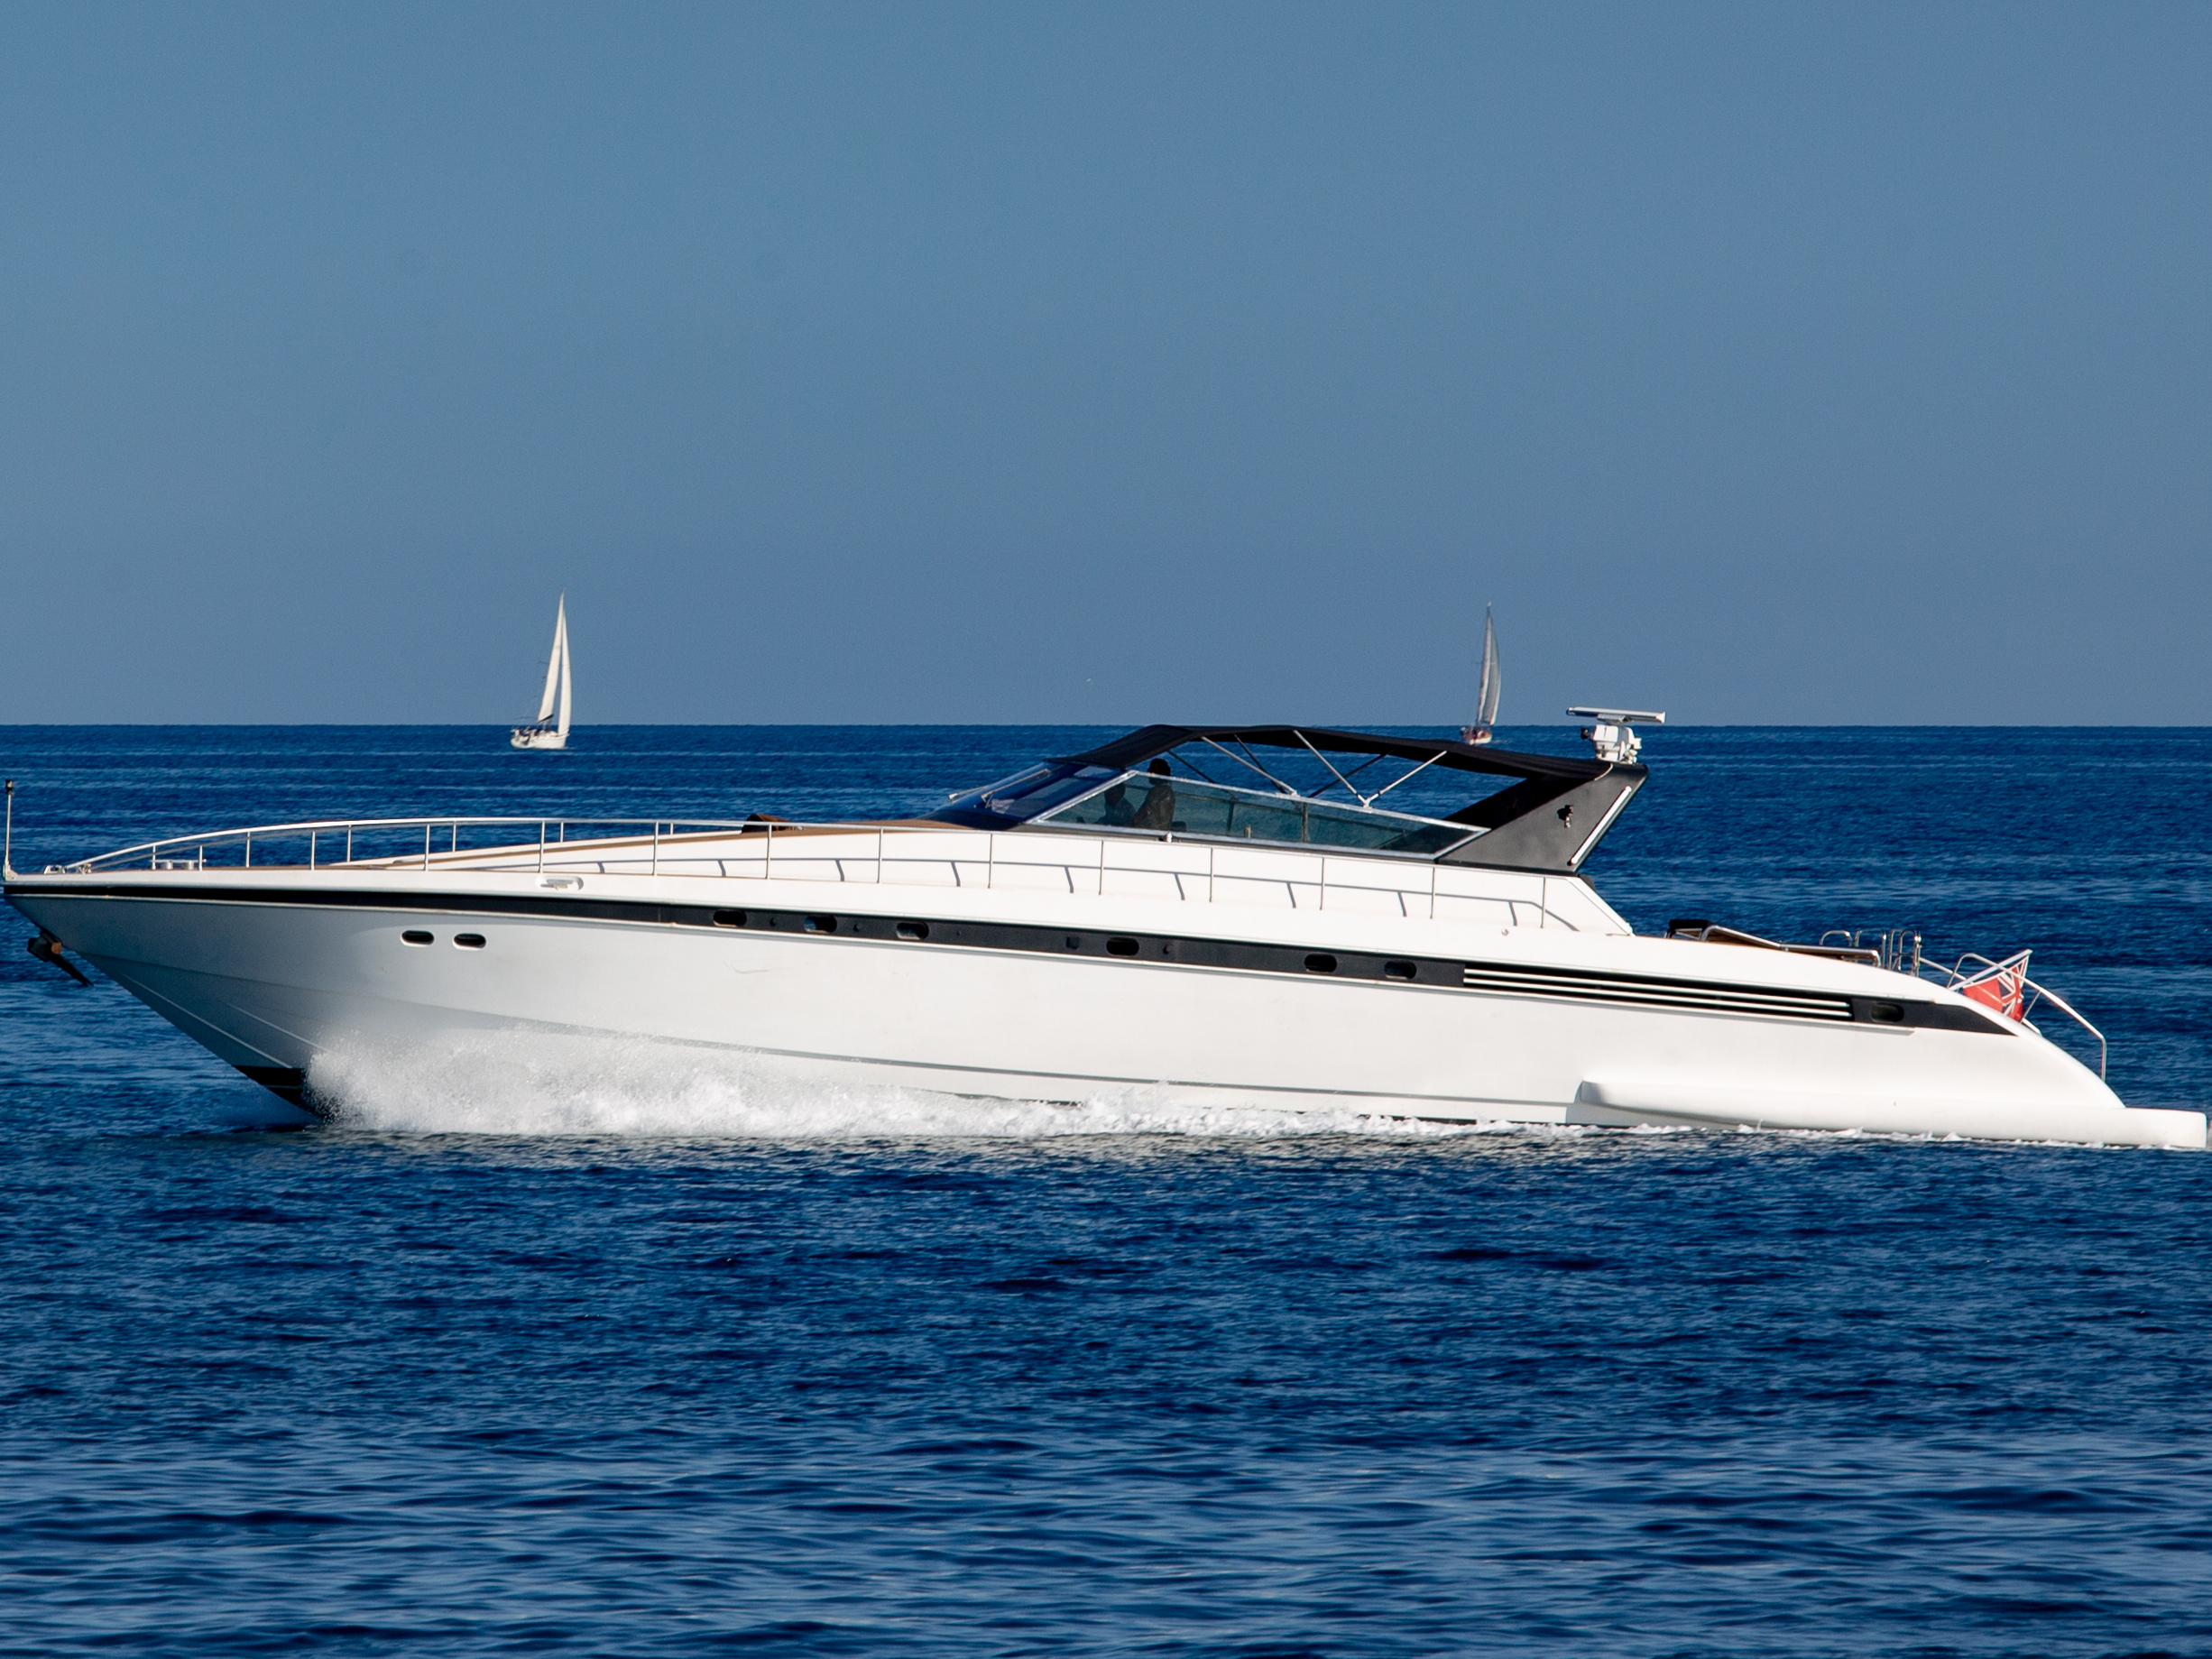 Leopard 23 - Yacht Charter Milazzo & Boat hire in Italy Sicily Aeolian Islands Milazzo Marina Poseidon 1